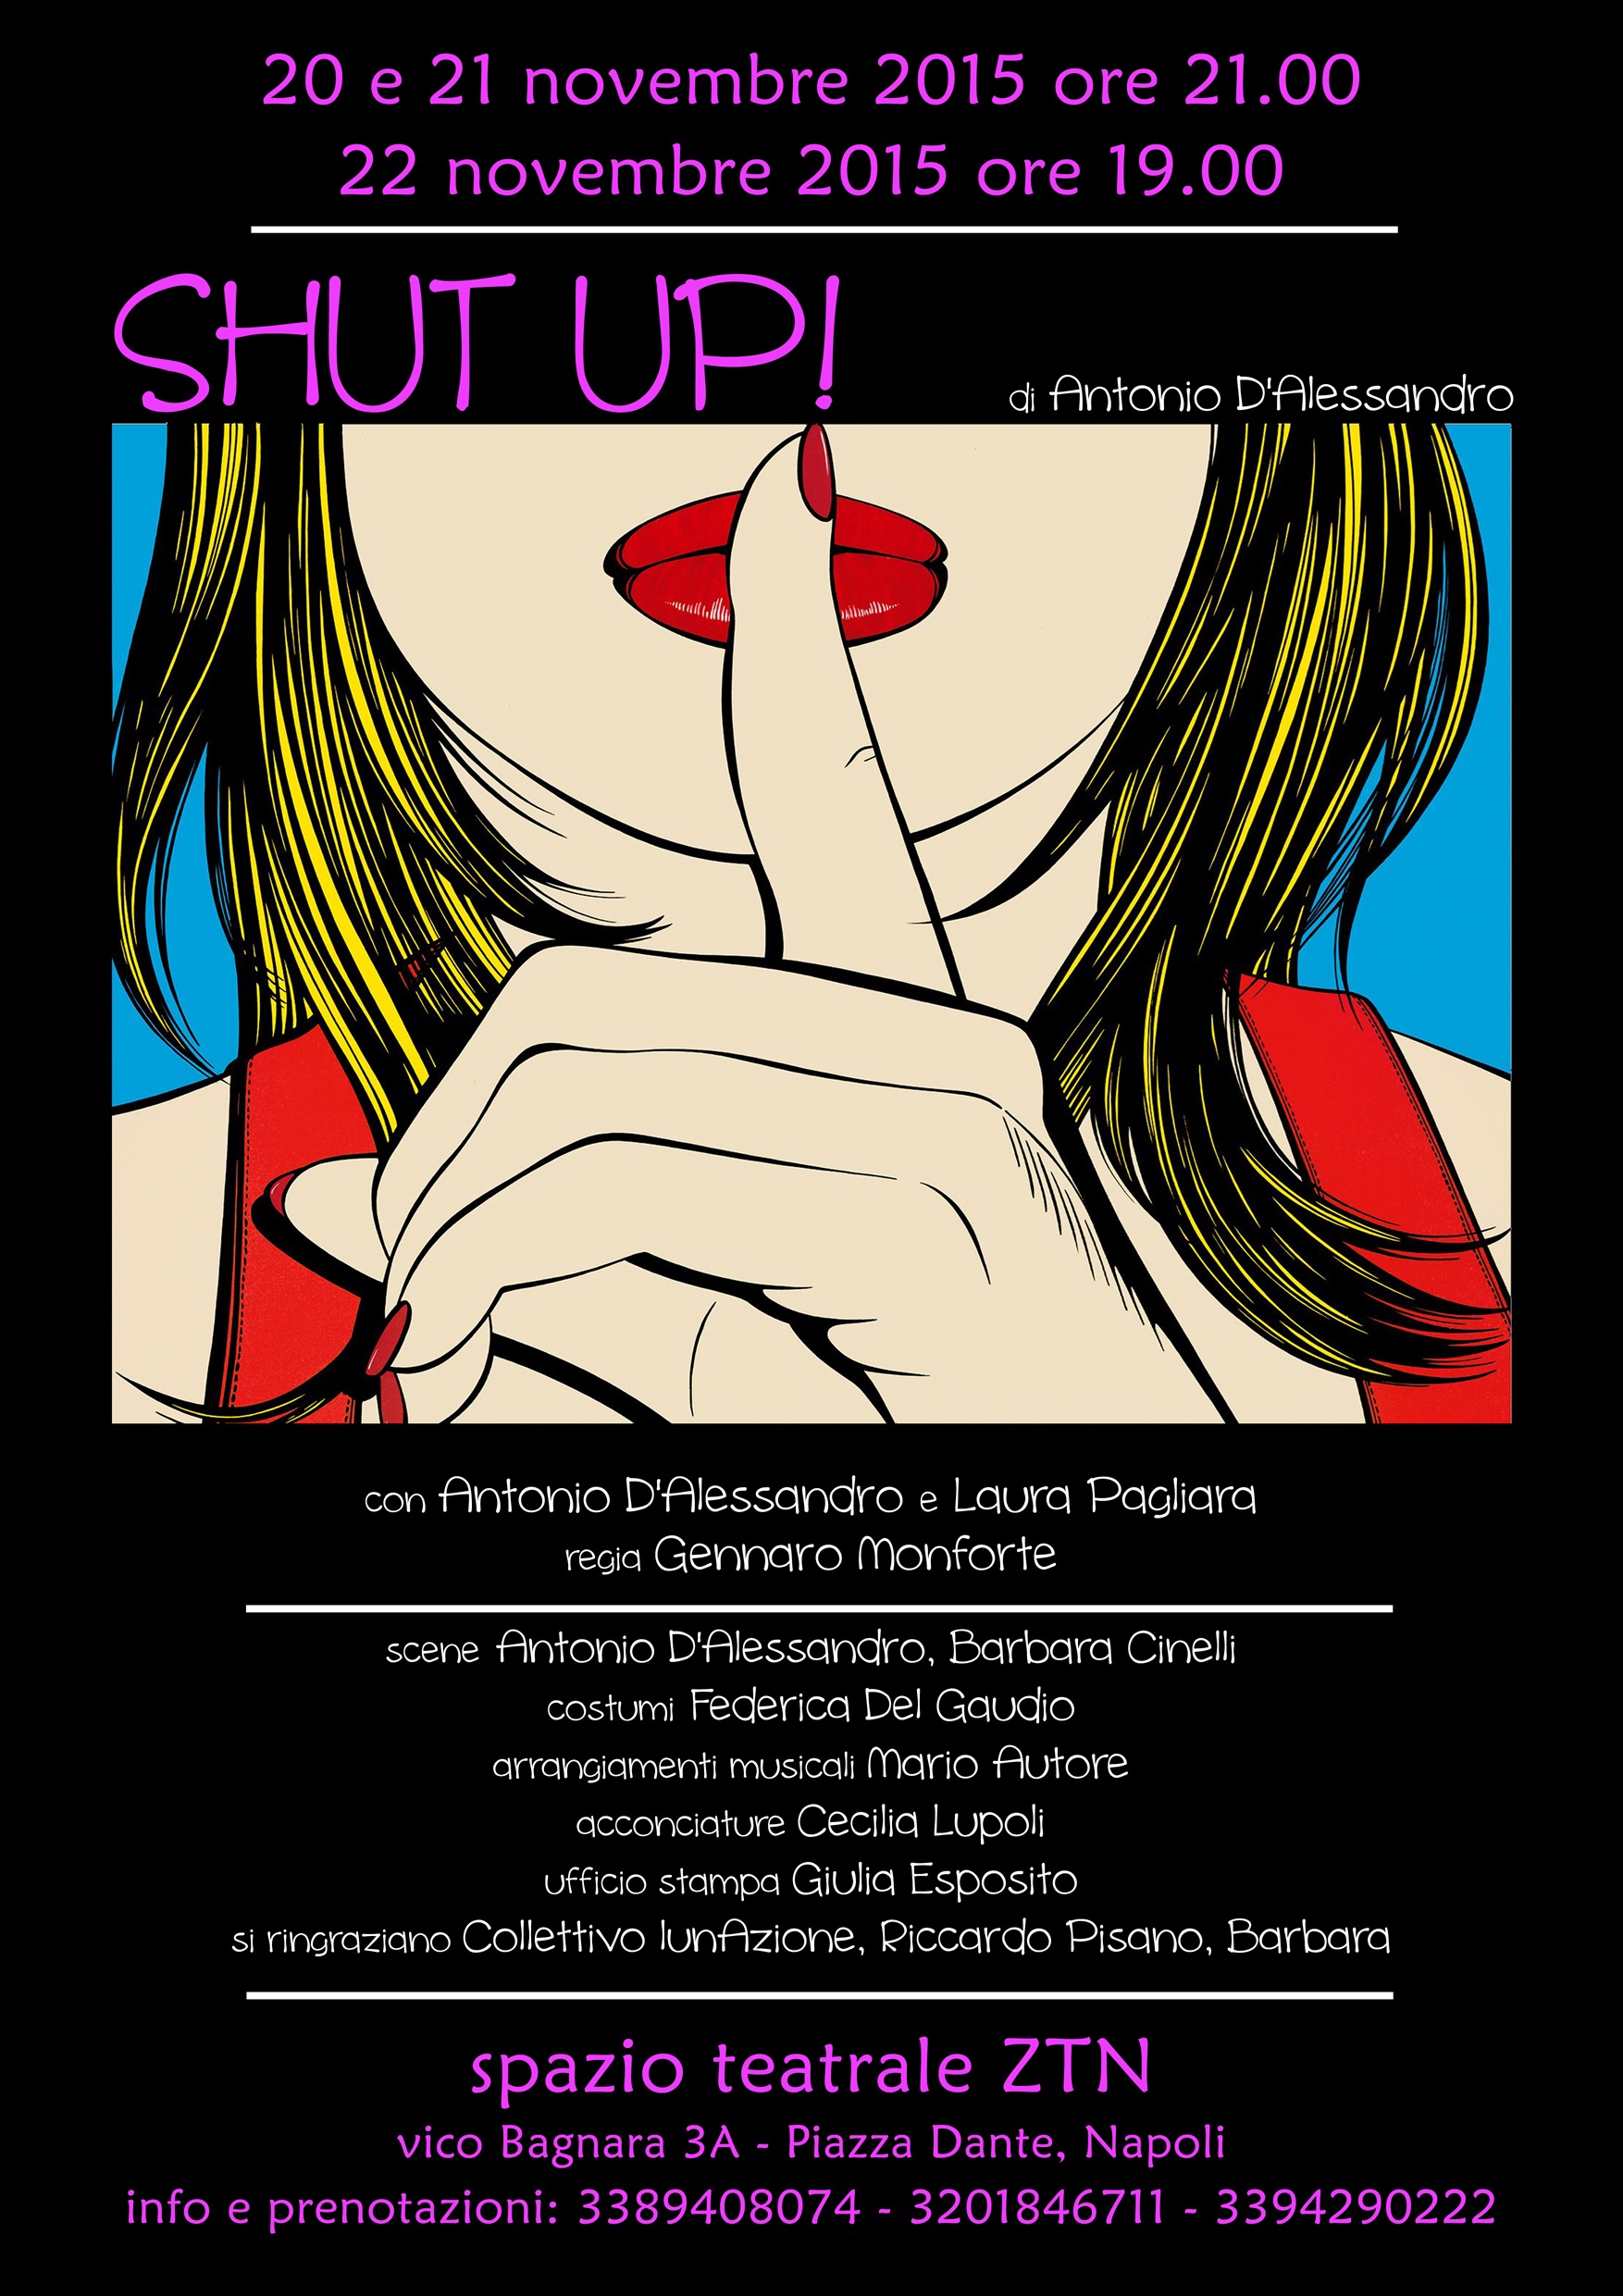  SHUT UP: dal 20 al 22 novembre 2015 allo spazio teatrale ZTN di Napoli